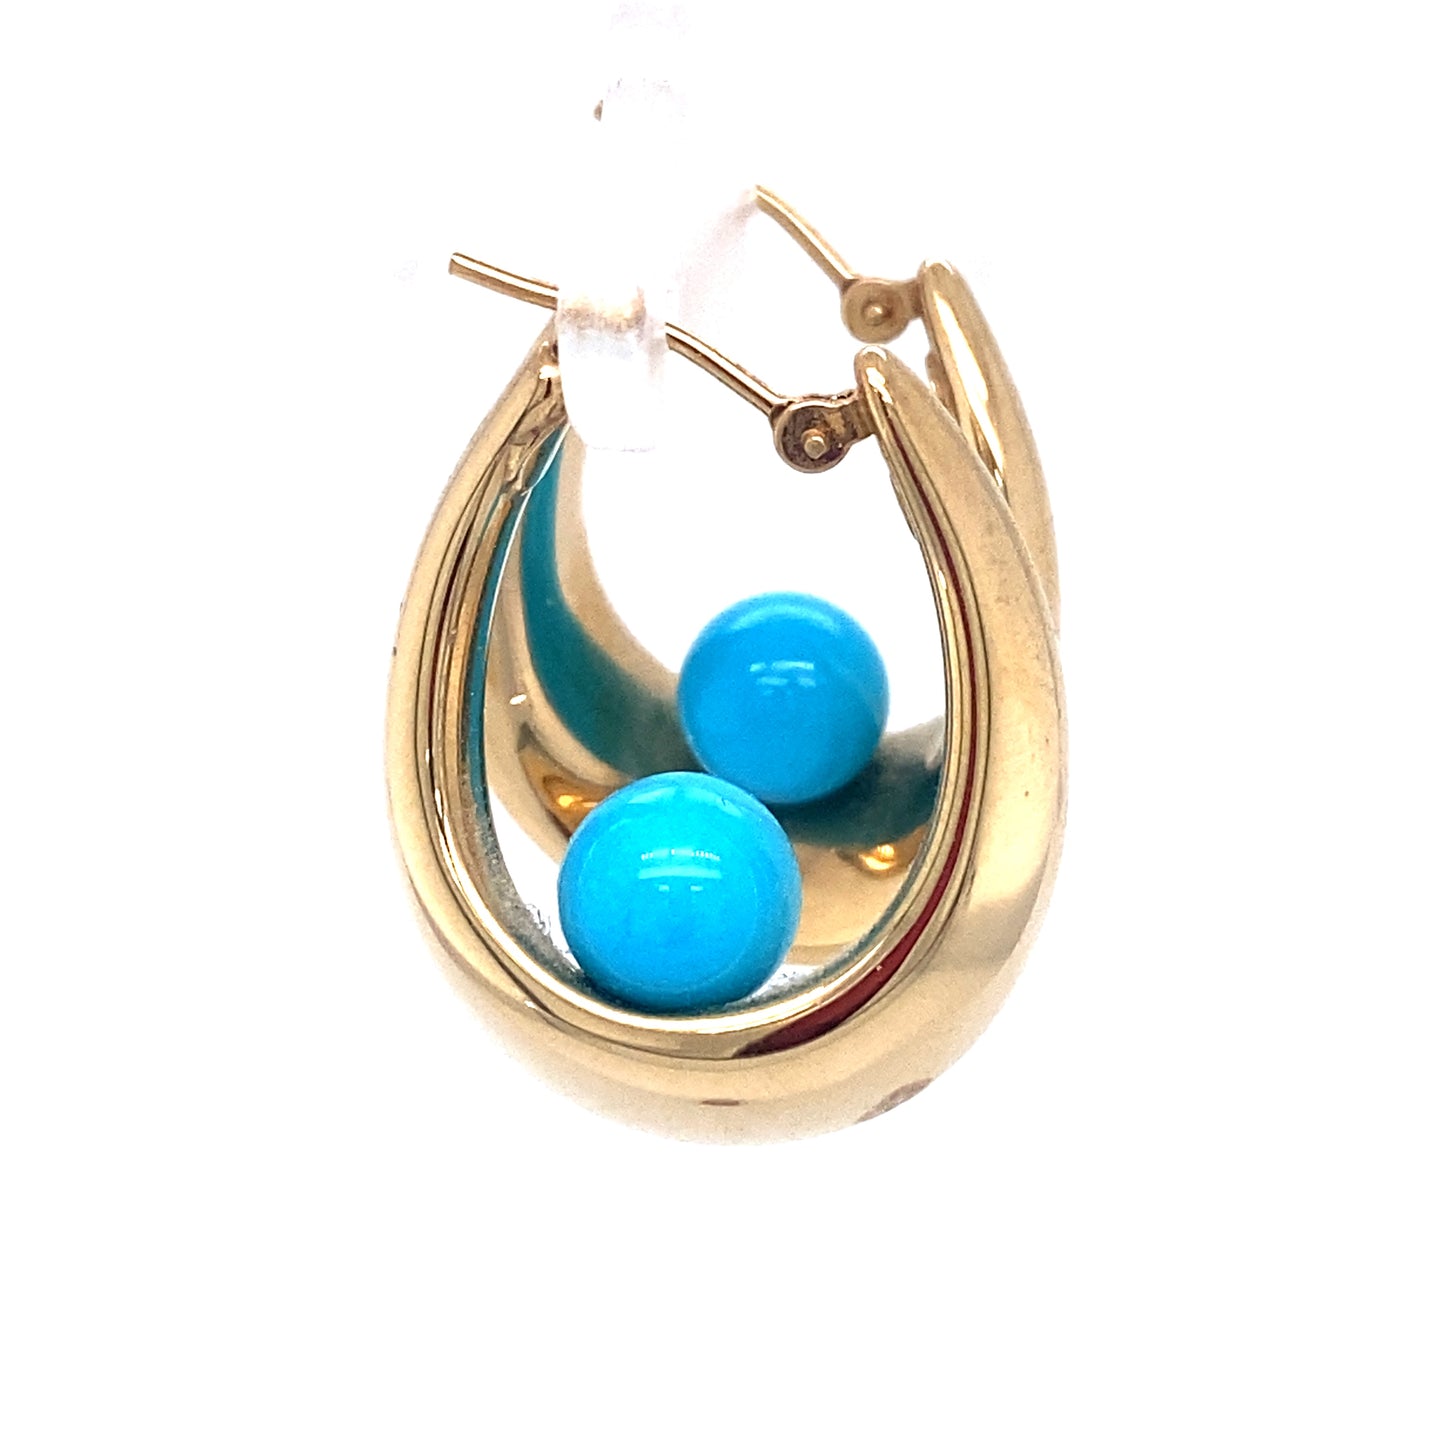 Circa 1950s Turquoise Bead Hoop Earrings in 14K Gold